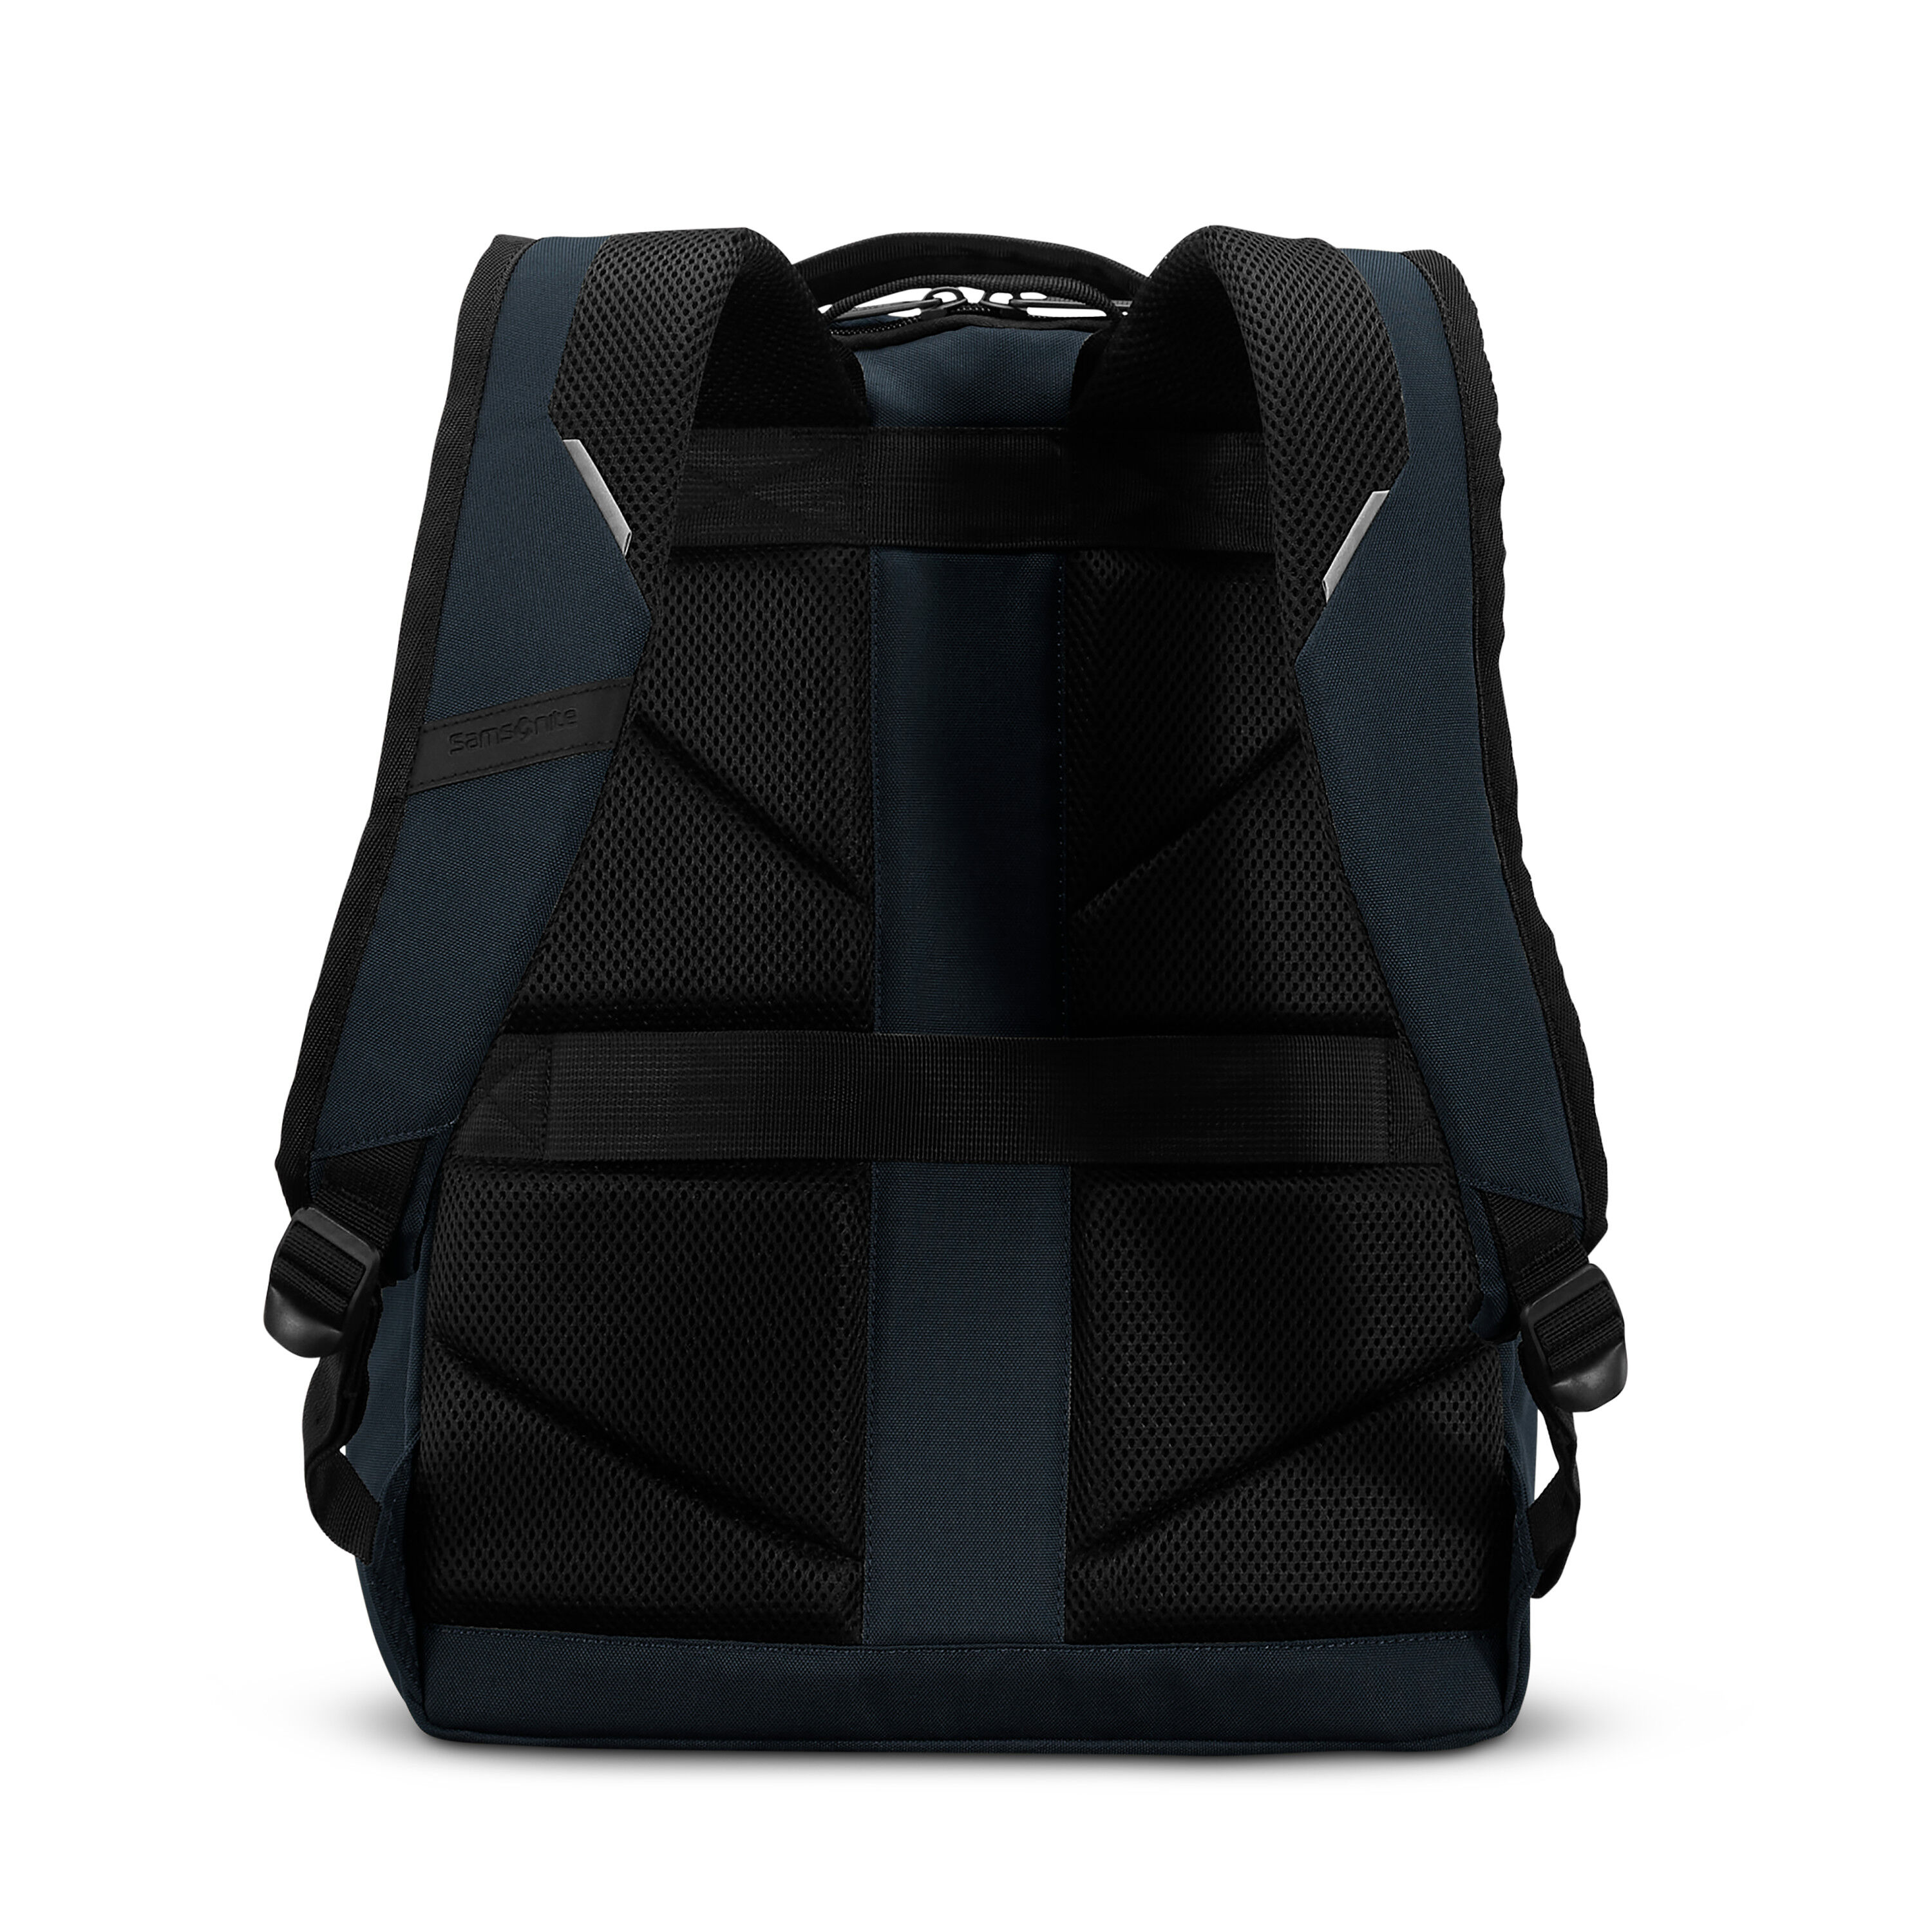 Buy Carrier GSD Backpack for USD 59.99 | Samsonite US